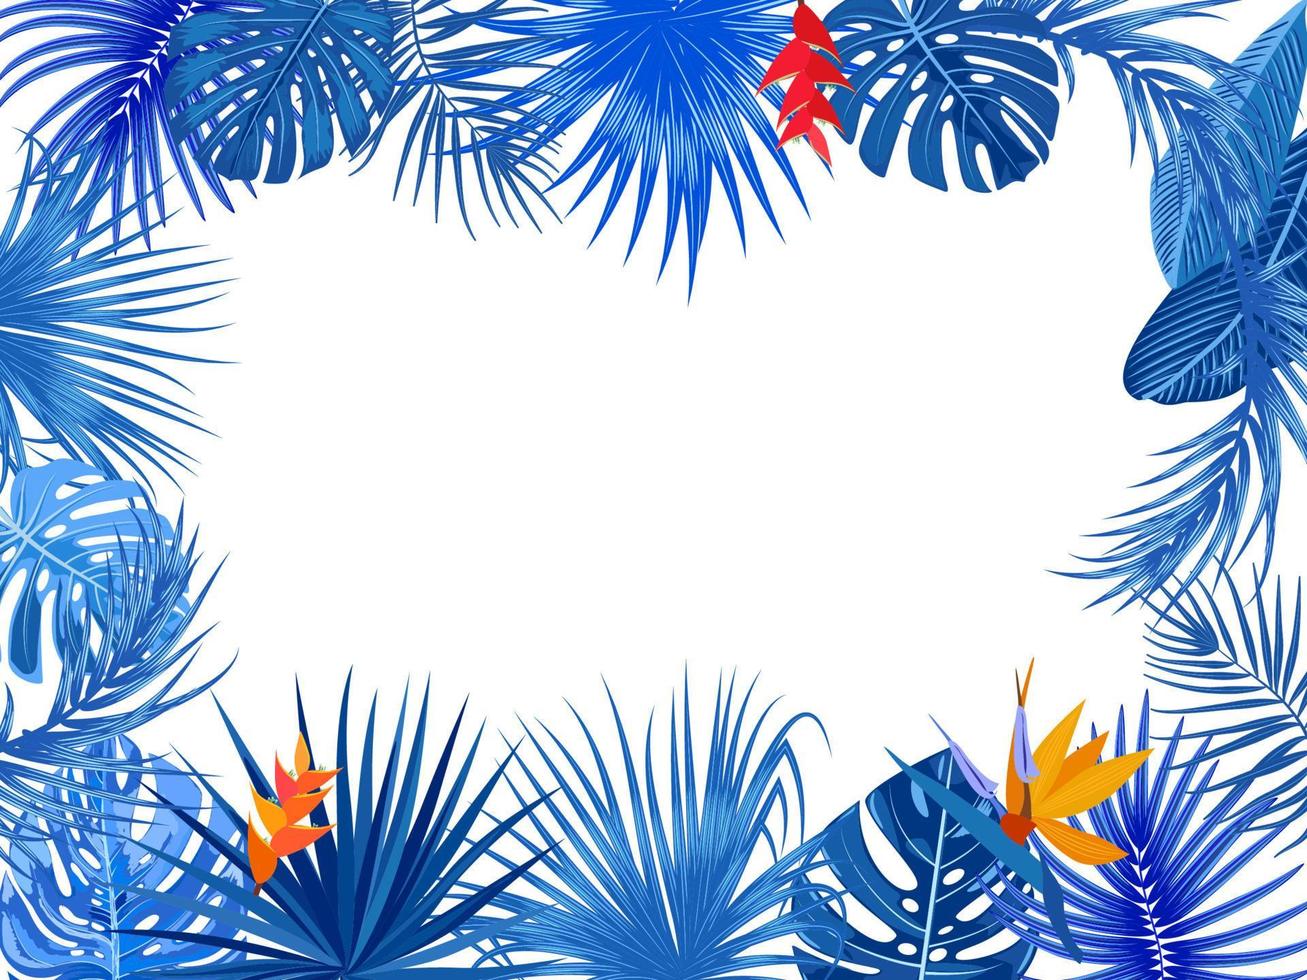 quadro de selva tropical vetorial com palmeiras azuis, flores e folhas em fundo branco vetor